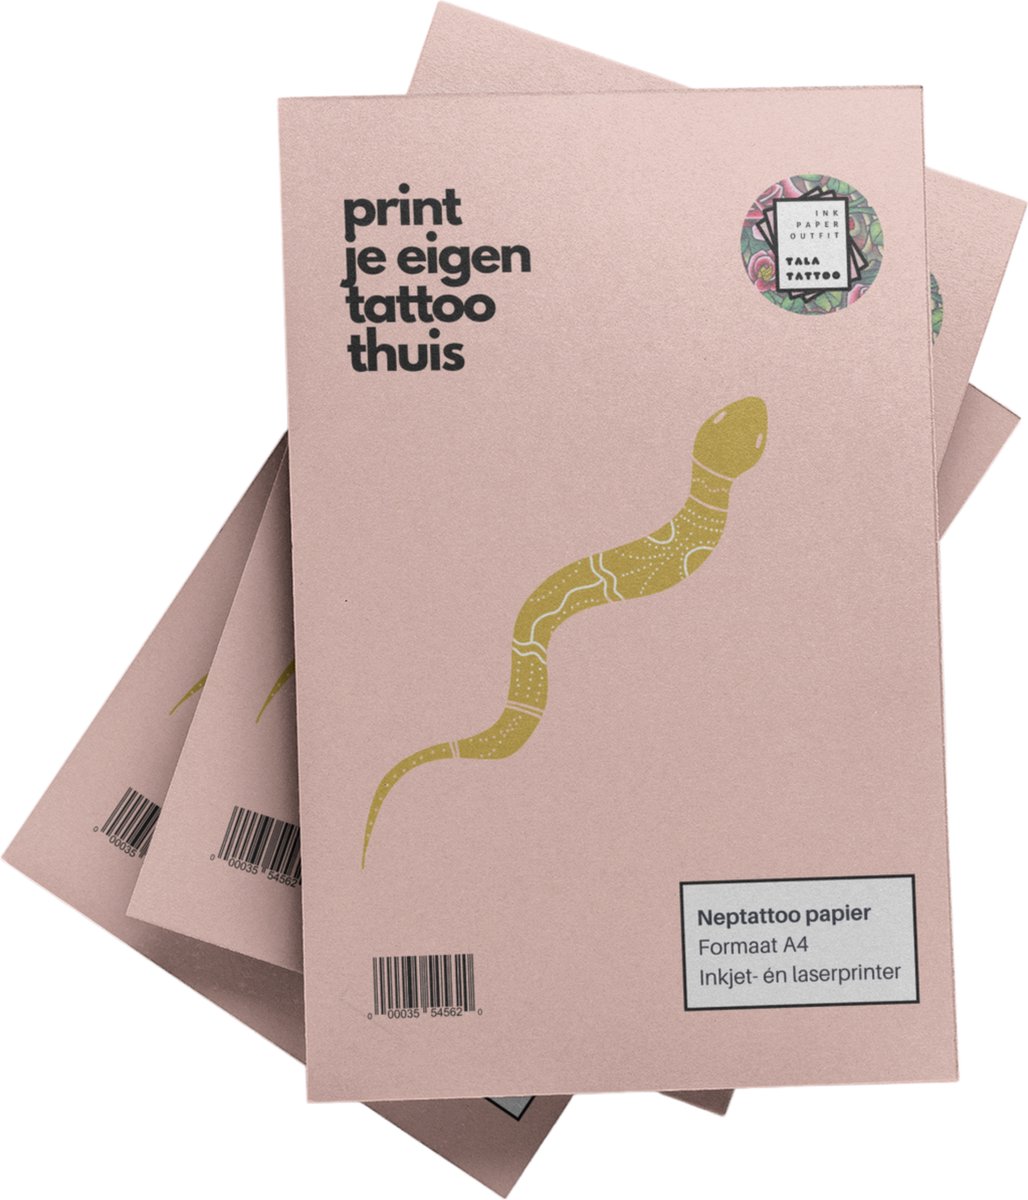 Talatattoo - neptattoo volwassenen - 1 set A4 neptattoo papier - zelf design printen (Inkjet/Laser)